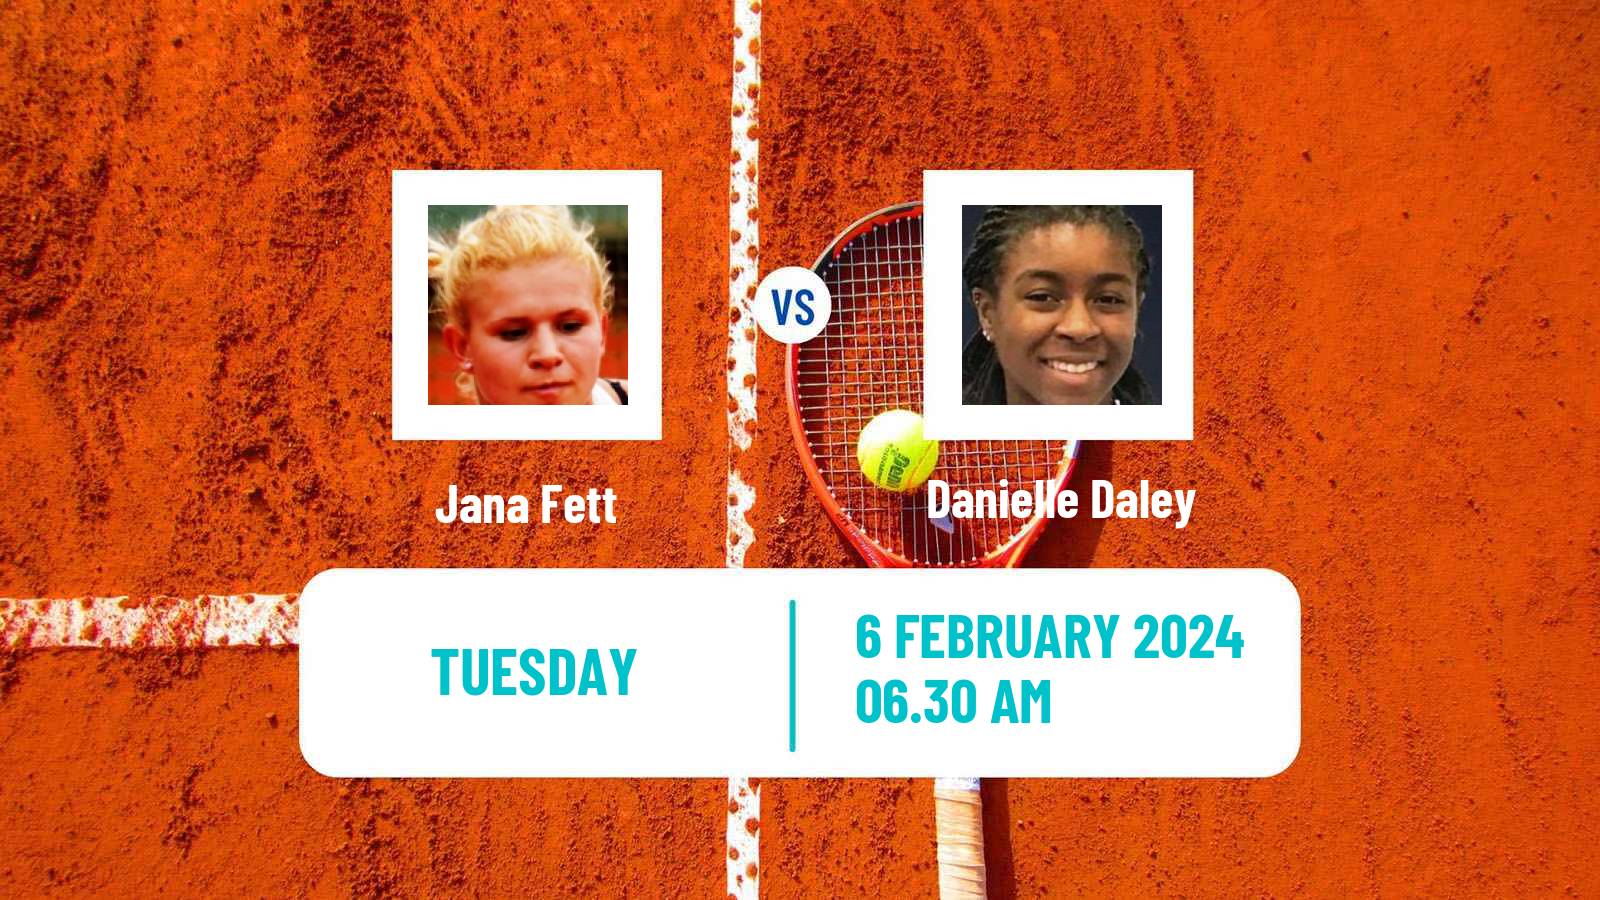 Tennis ITF W50 Edgbaston Women Jana Fett - Danielle Daley